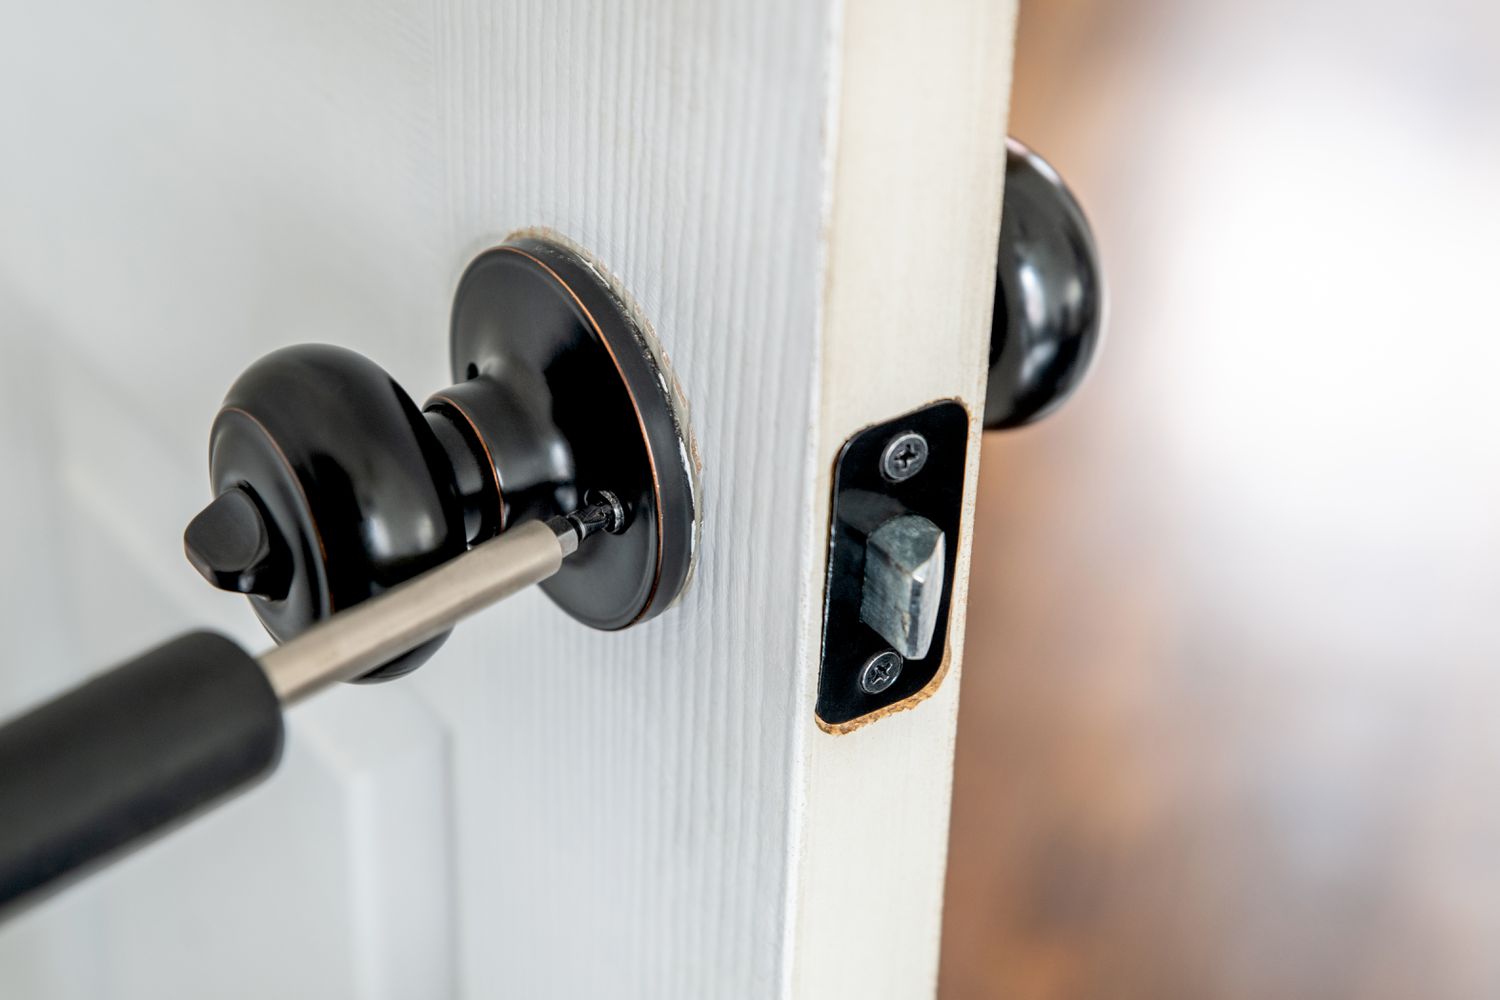 How To Fix A Loose Front Door Lock